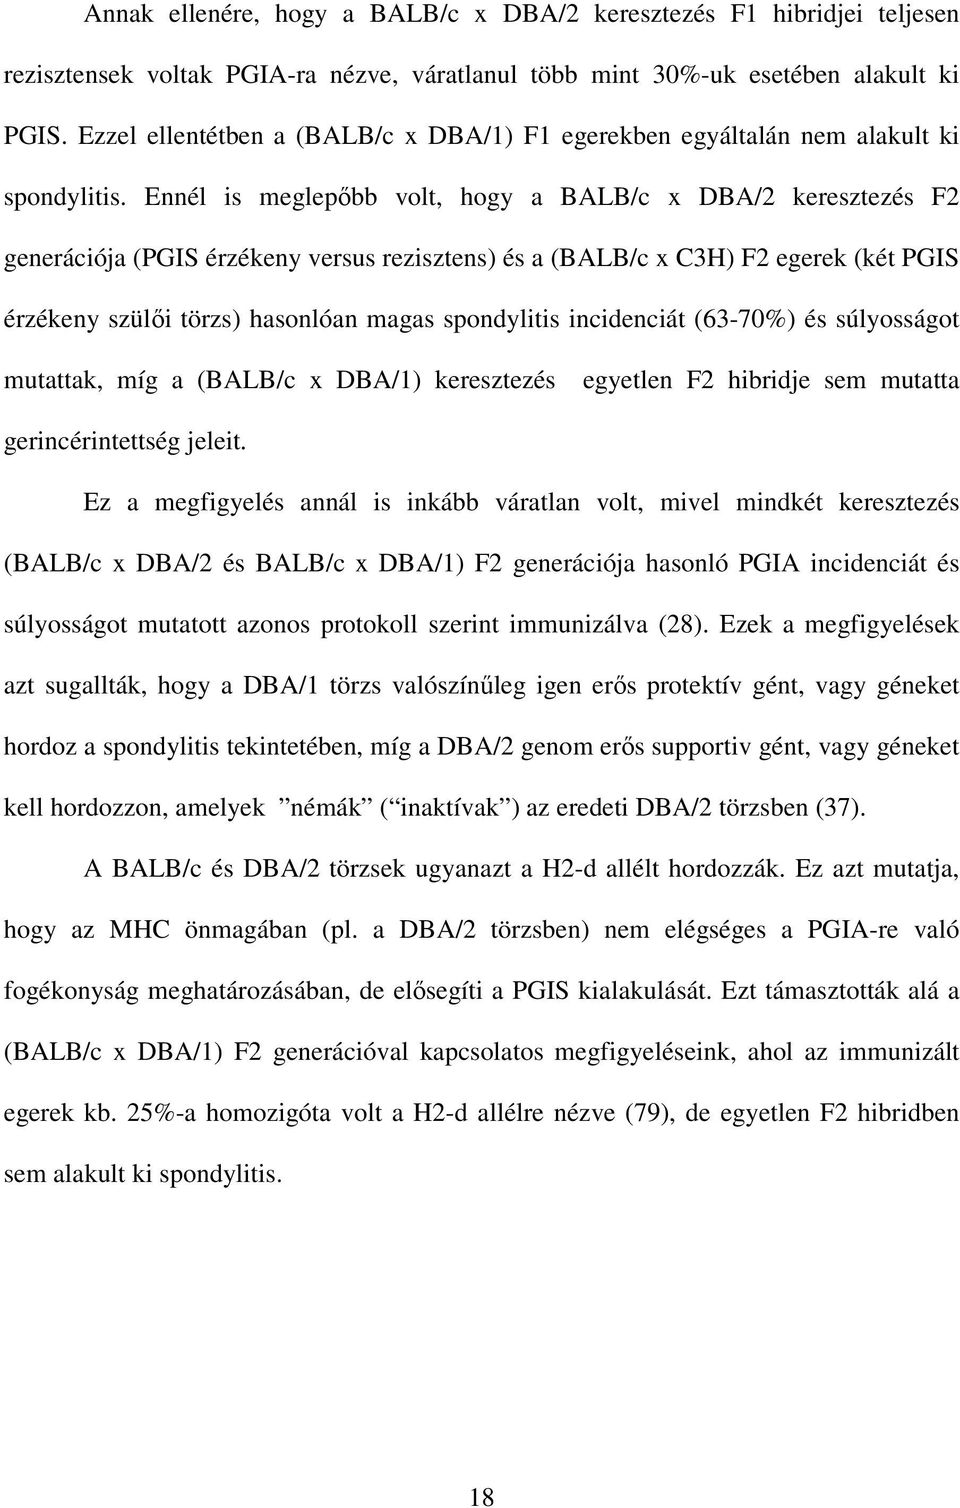 Ennél is meglepıbb volt, hogy a BALB/c x DBA/2 keresztezés F2 generációja (PGIS érzékeny versus rezisztens) és a (BALB/c x C3H) F2 egerek (két PGIS érzékeny szülıi törzs) hasonlóan magas spondylitis